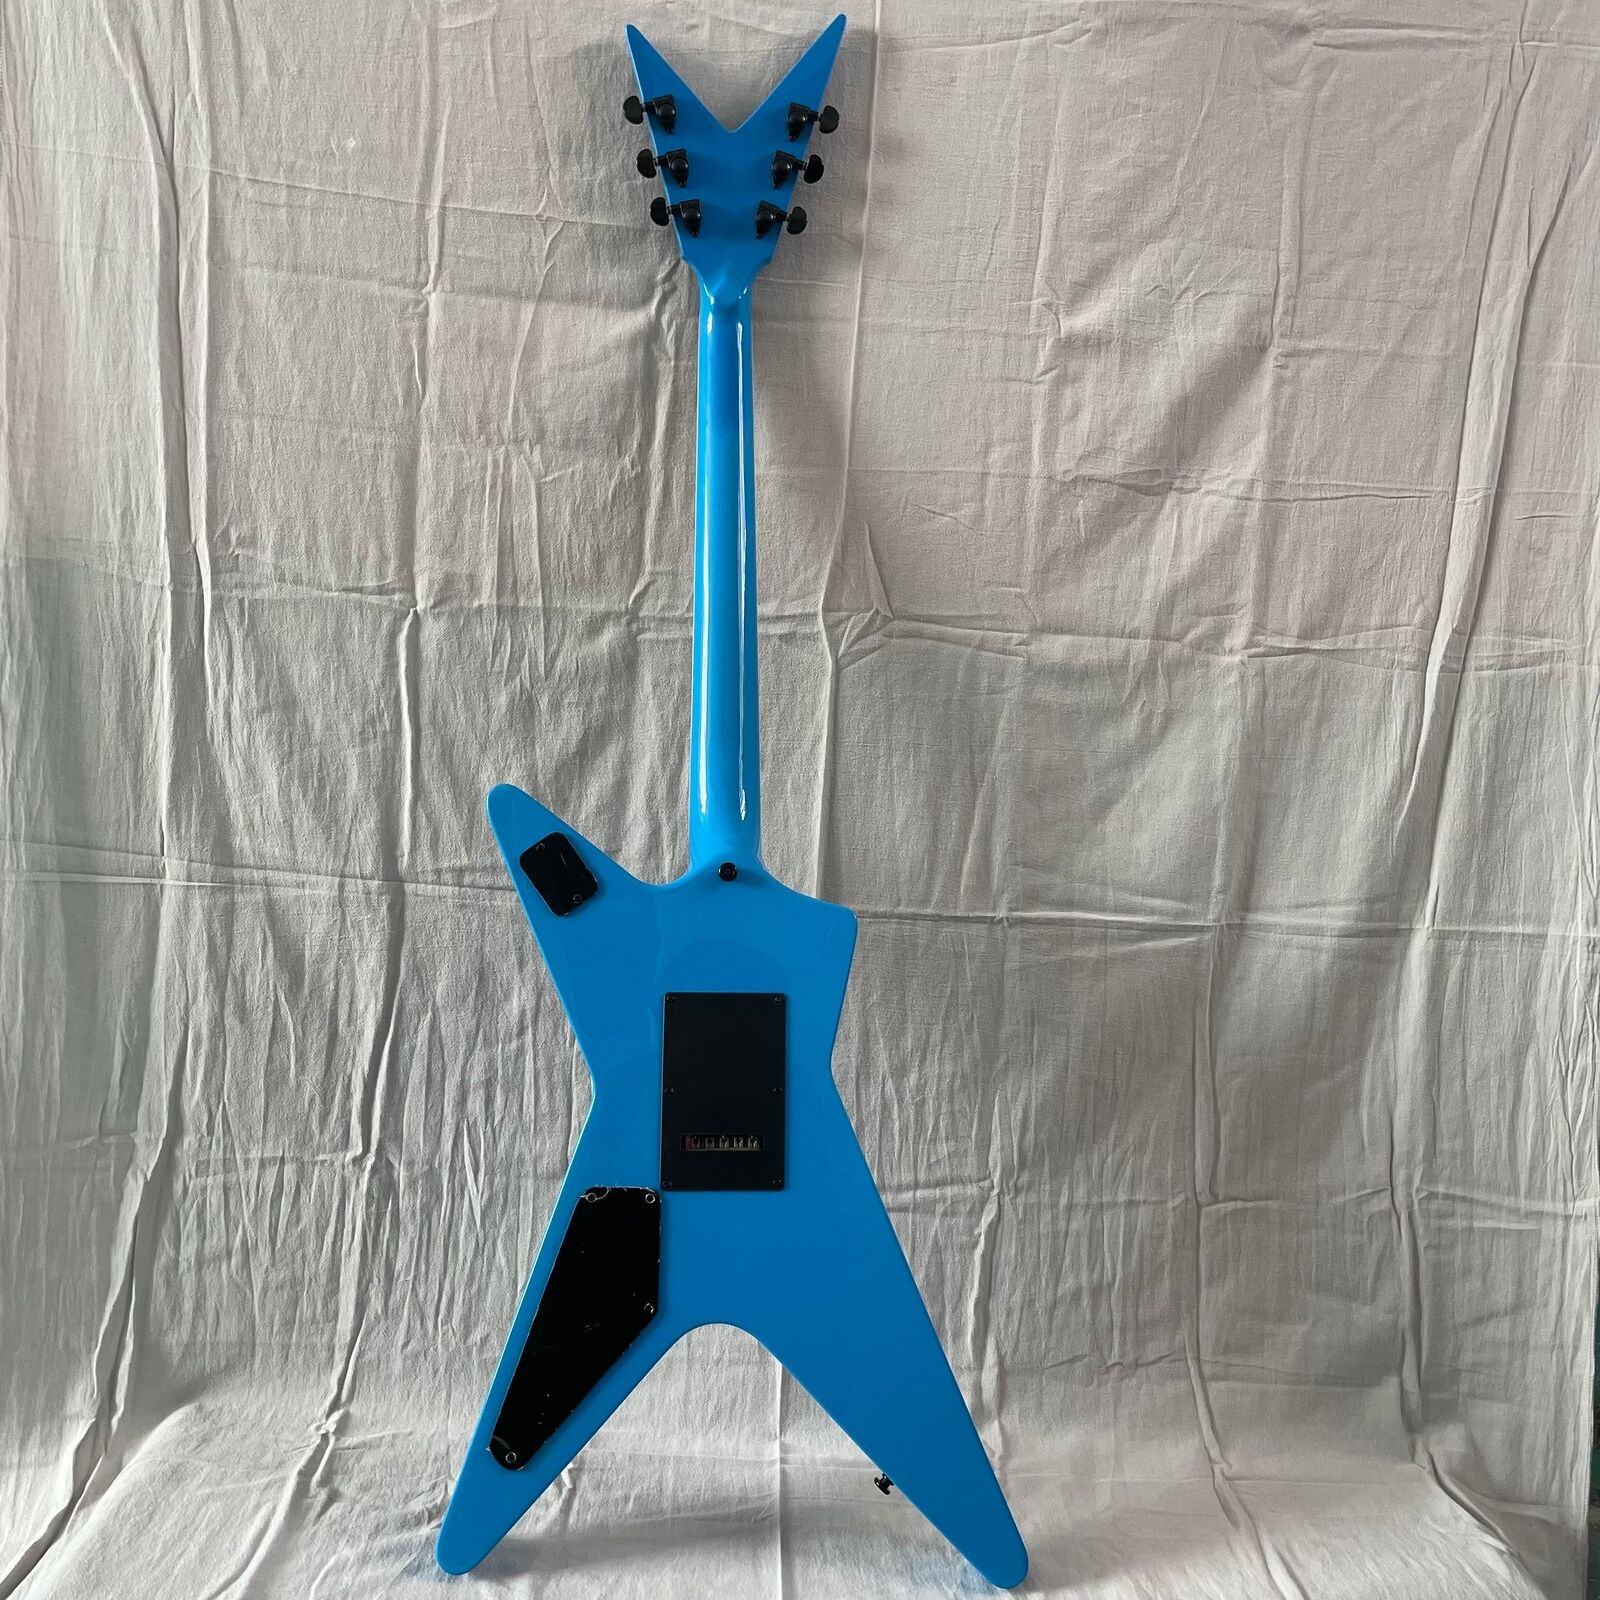 Hot Sale Factory Custom Ml Shaped 6Strings Electric Guitar Lightning Veneer